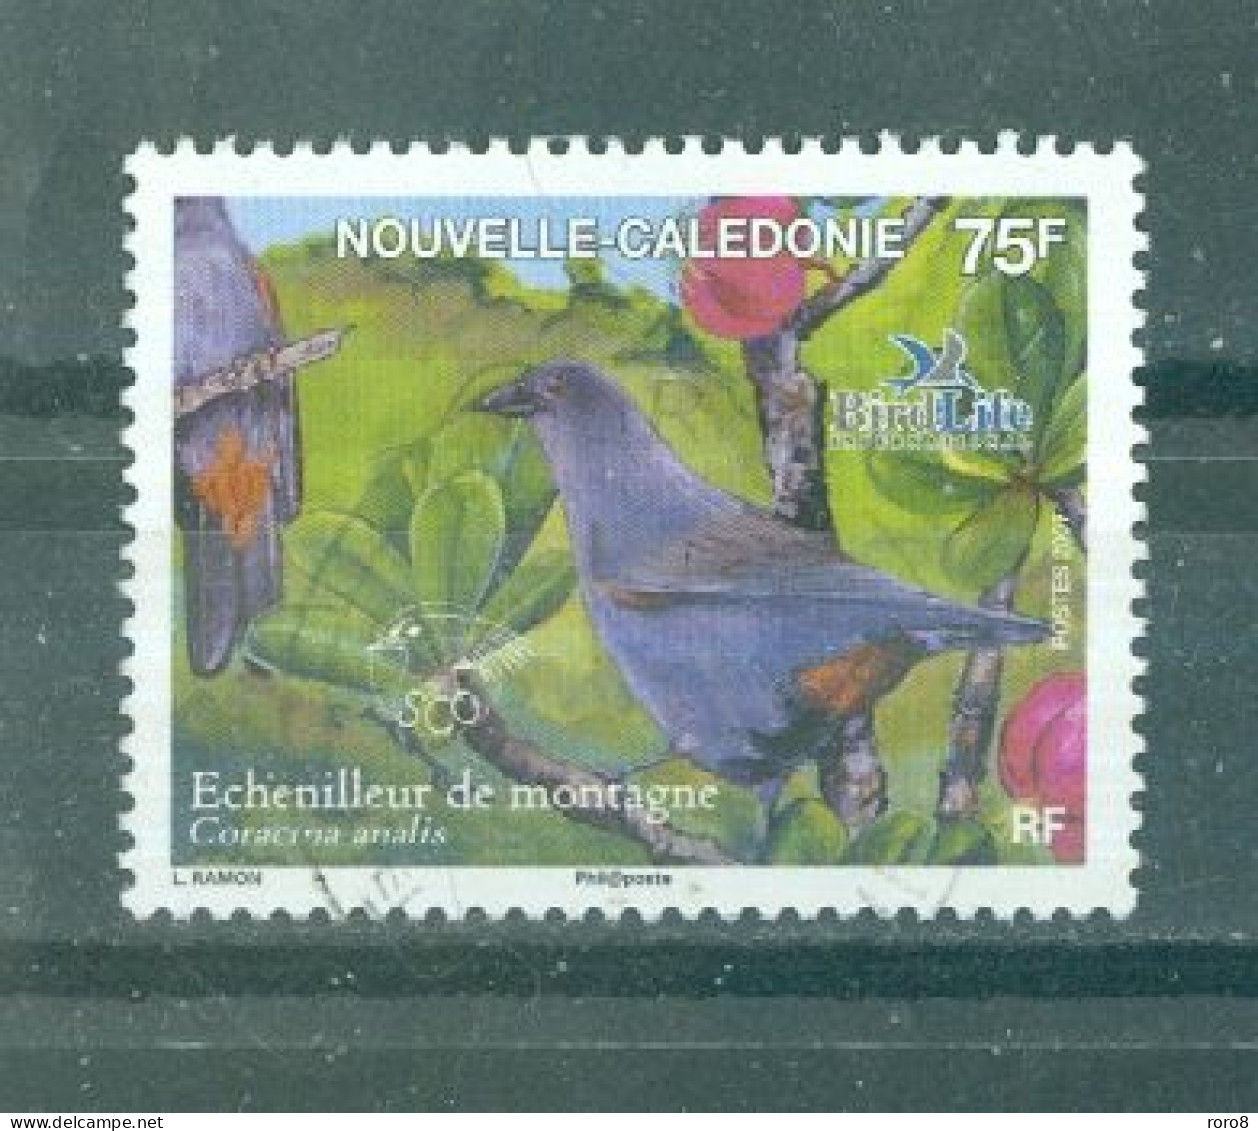 NOUVELLE-CALEDONIE - N°1005 Oblitéré - Faune. Oiseaux Endémiques Et Menacés D'extinction. - Usati